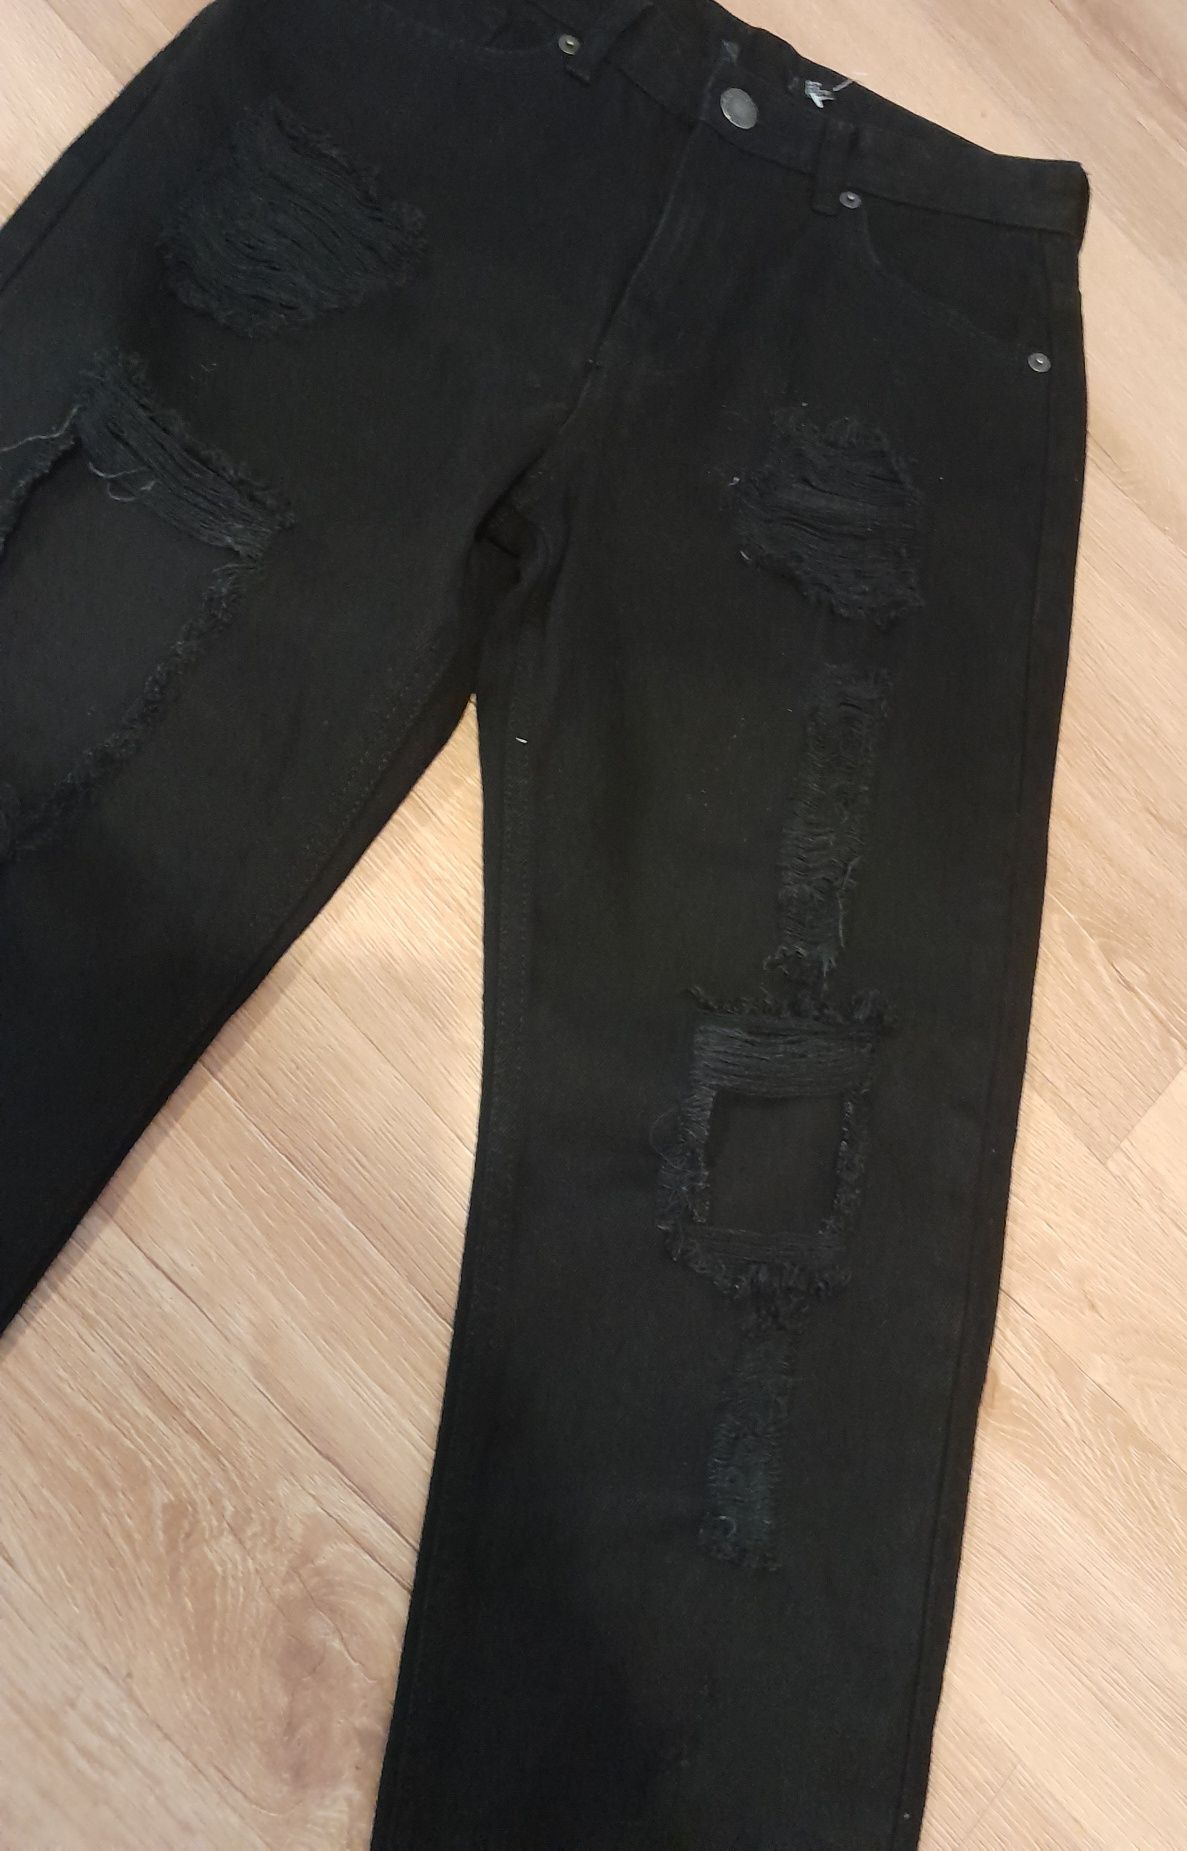 Czarne spodnie proste nogawki szarpane mocno dziurawe S 36